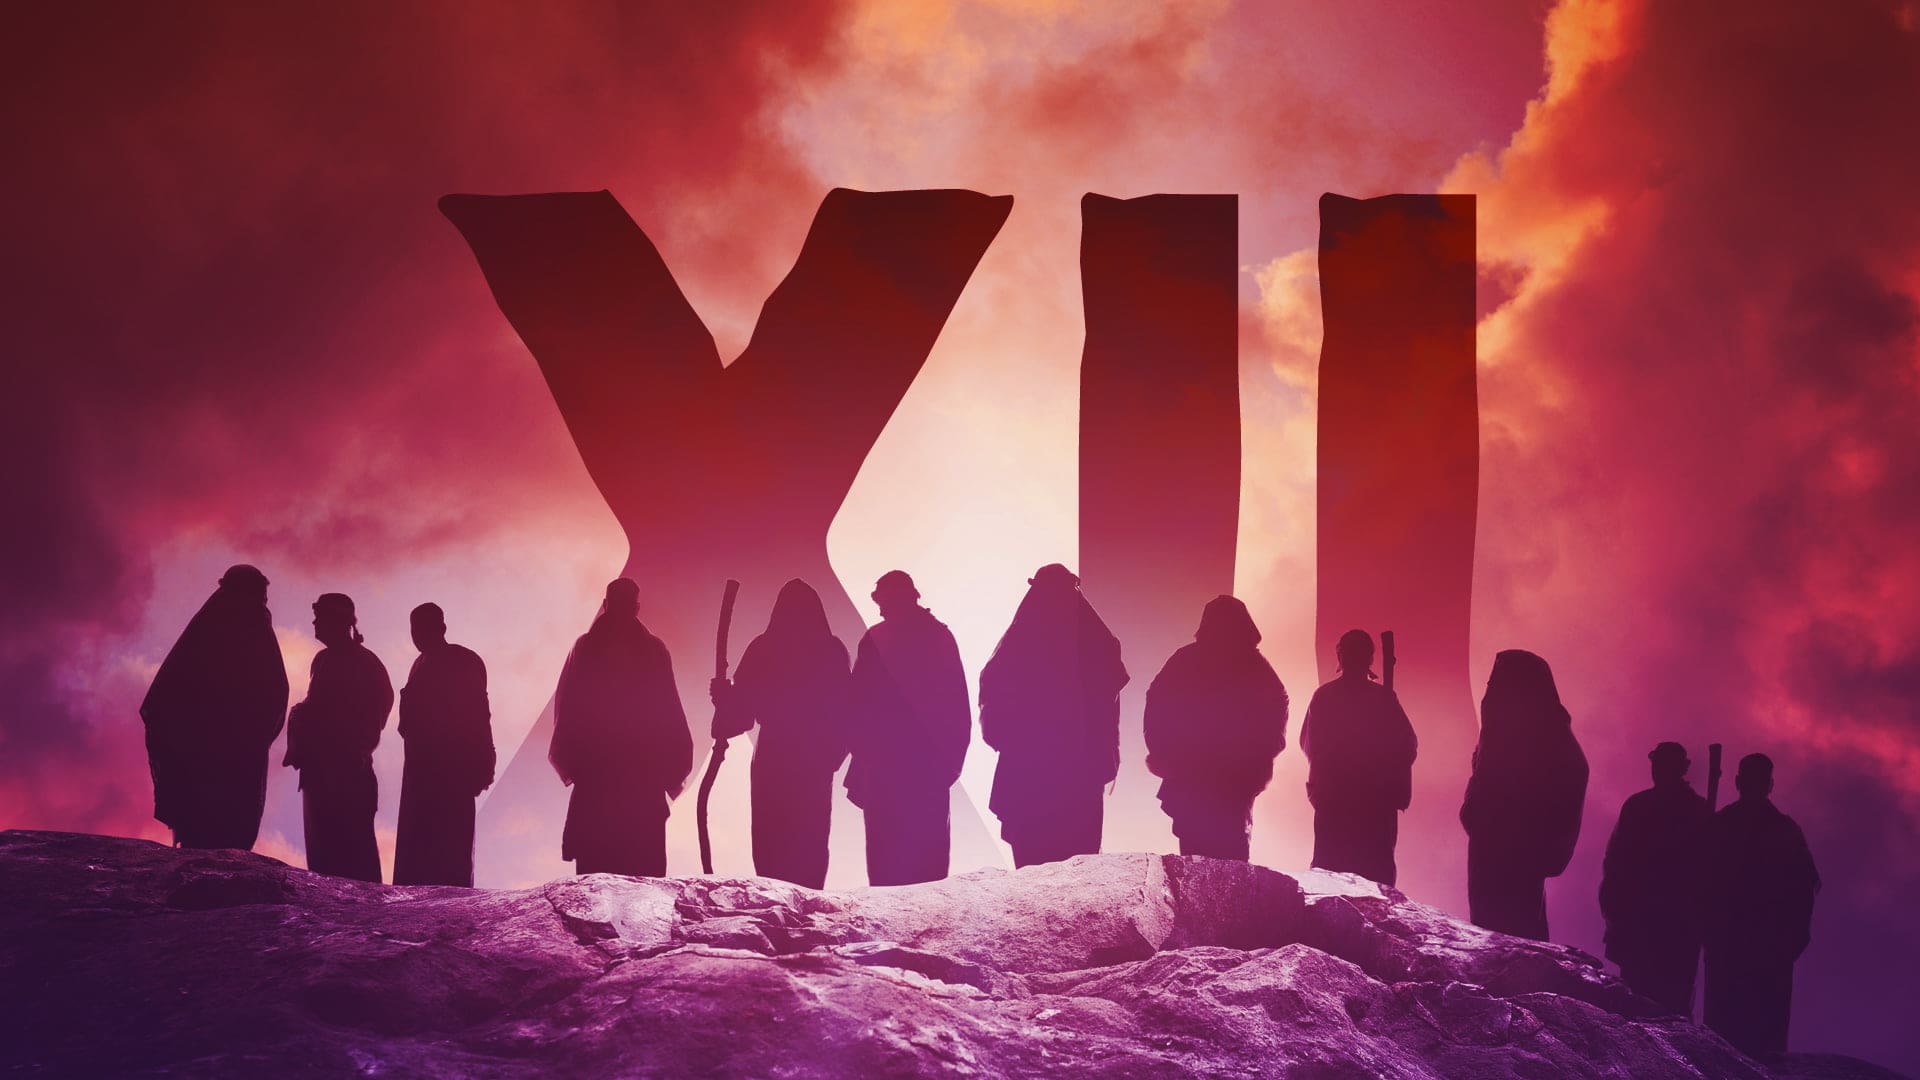 XII - The Twelve